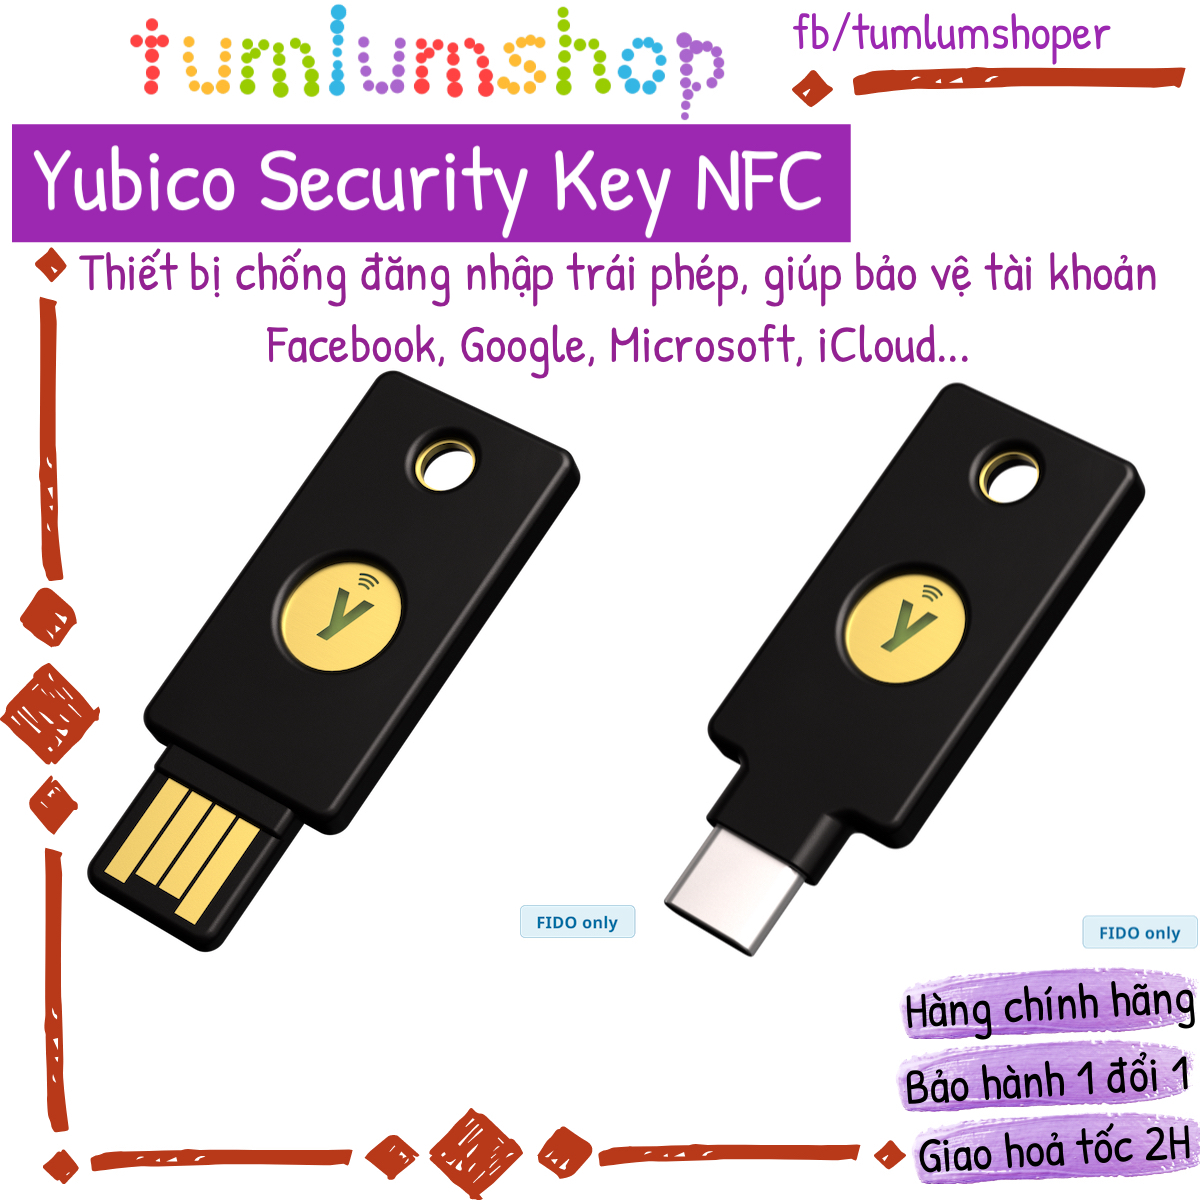 Thiết bị xác thực phần cứng Yubico Security Key NFC giúp bảo vệ tài khoản